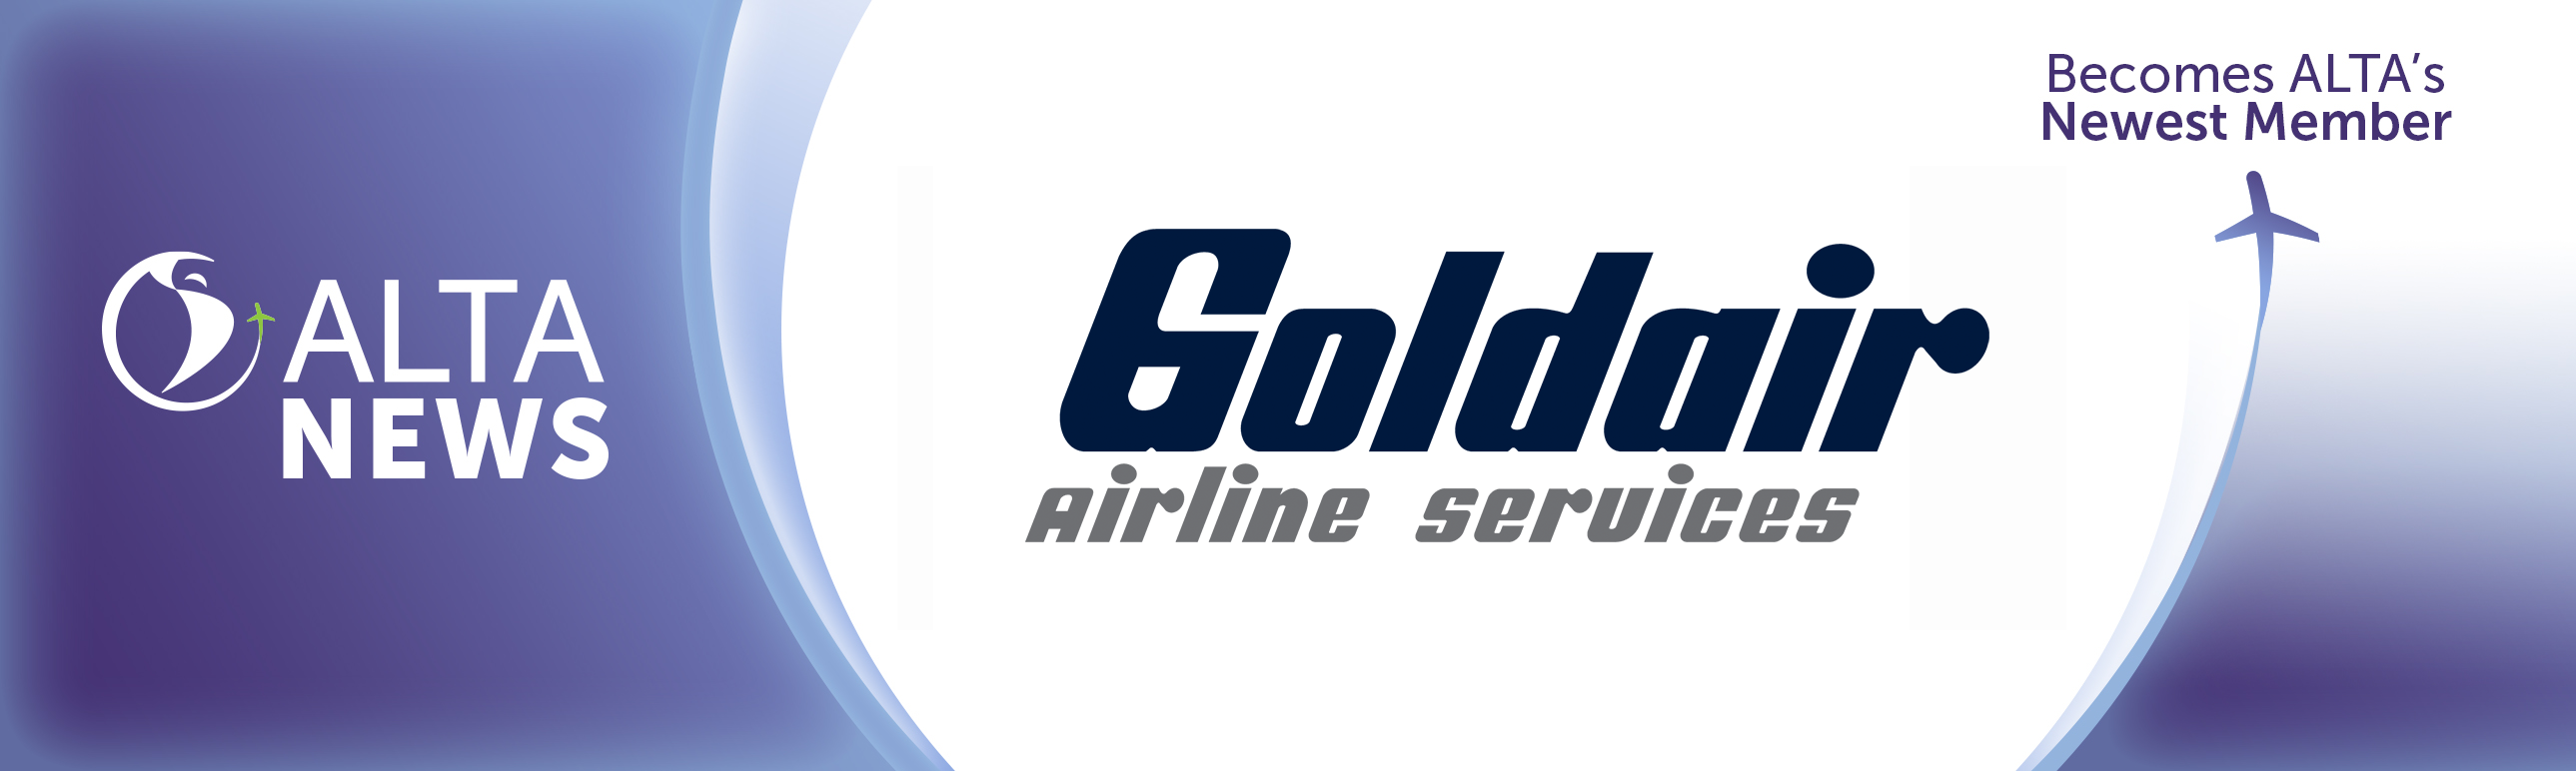 ALTA NEWS - Goldair Airline Services se une a ALTA